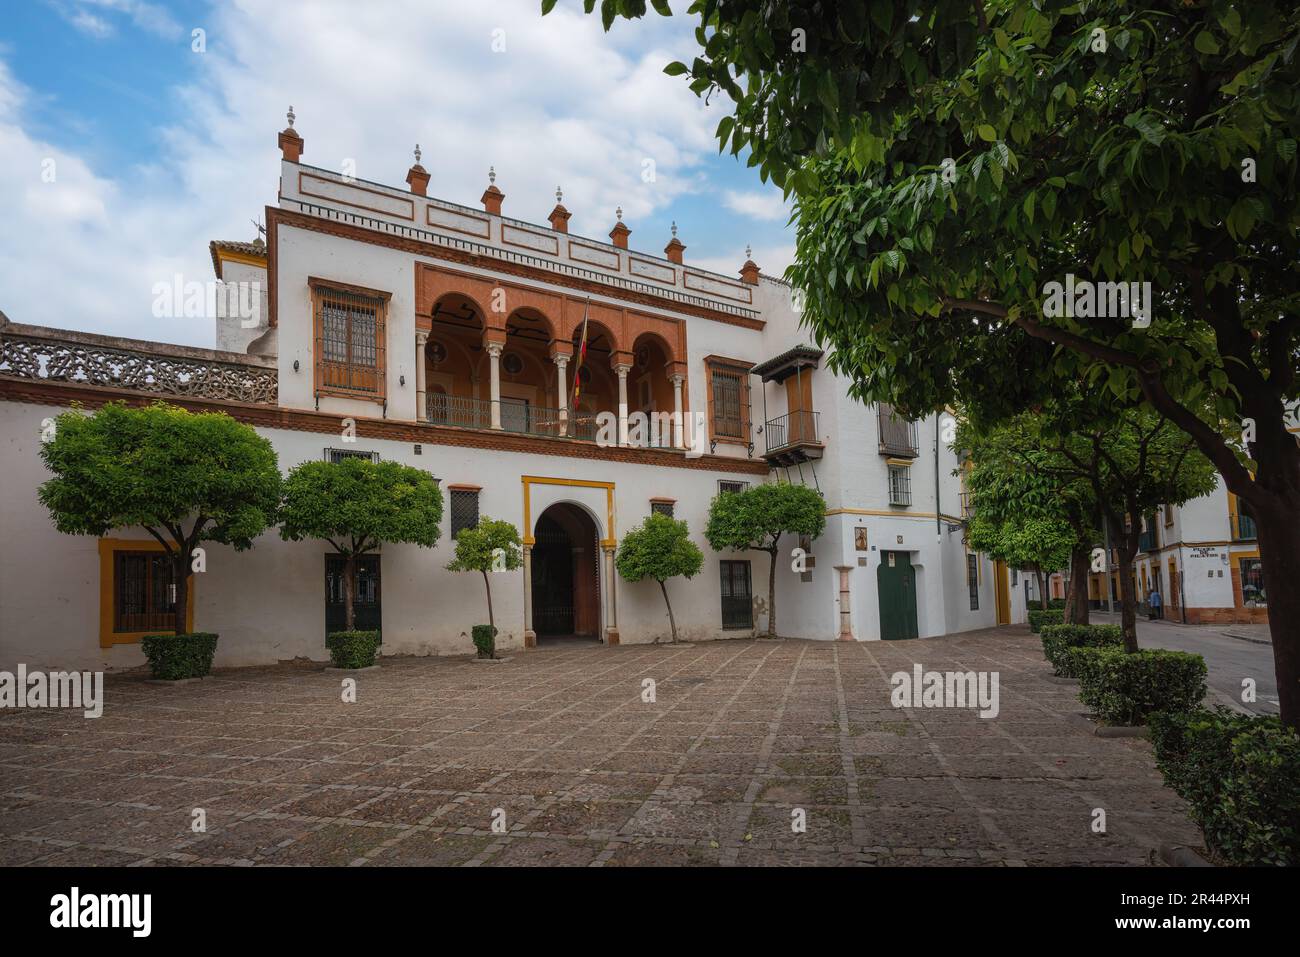 Casa de Pilatos (Pilates House) Palace Facade - Seville, Andalusia, Spain Stock Photo